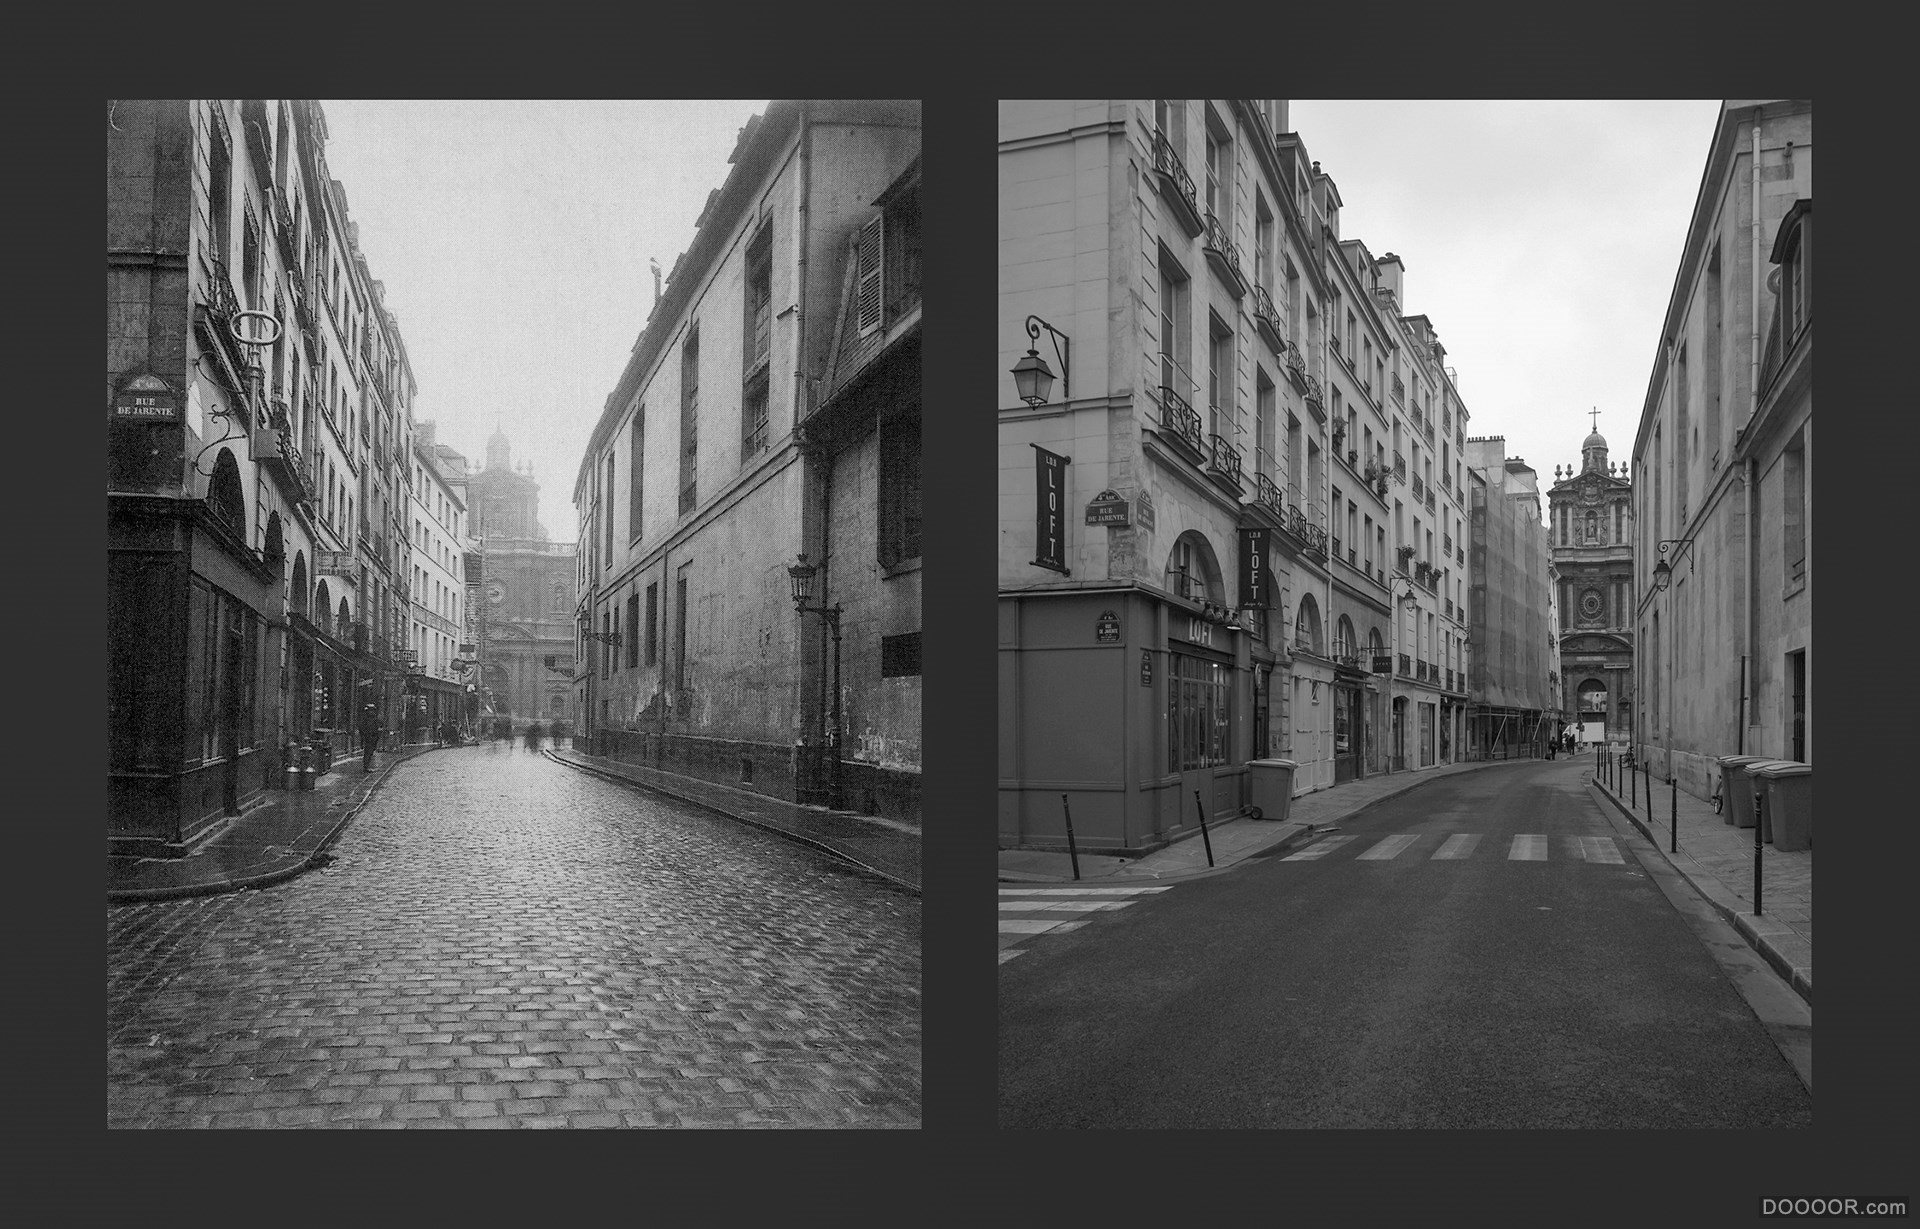 过去与现在-巴黎街头照片对比 [50P] (30).jpg